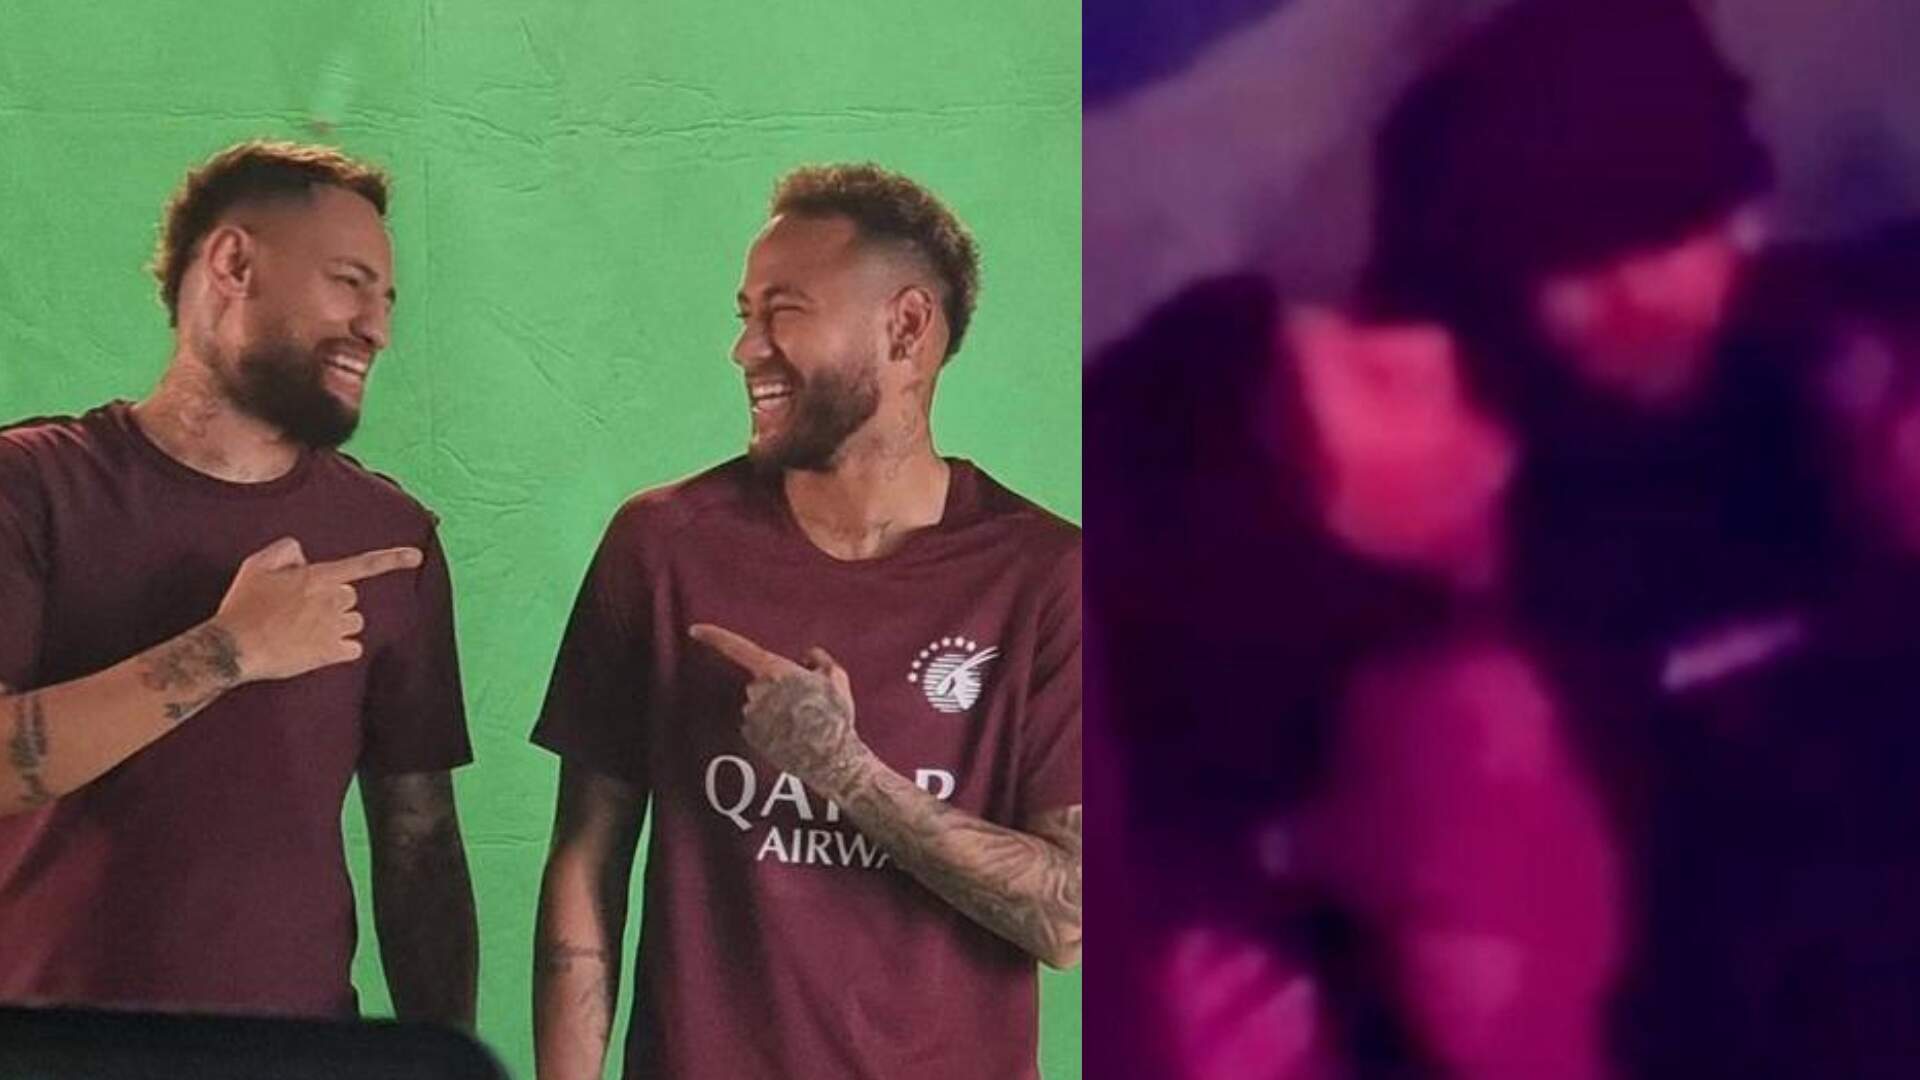 Era o Neymar em Barcelona? Após pronunciamento, sósia leva a culpa, mas fãs descobrem toda a verdade - Metropolitana FM